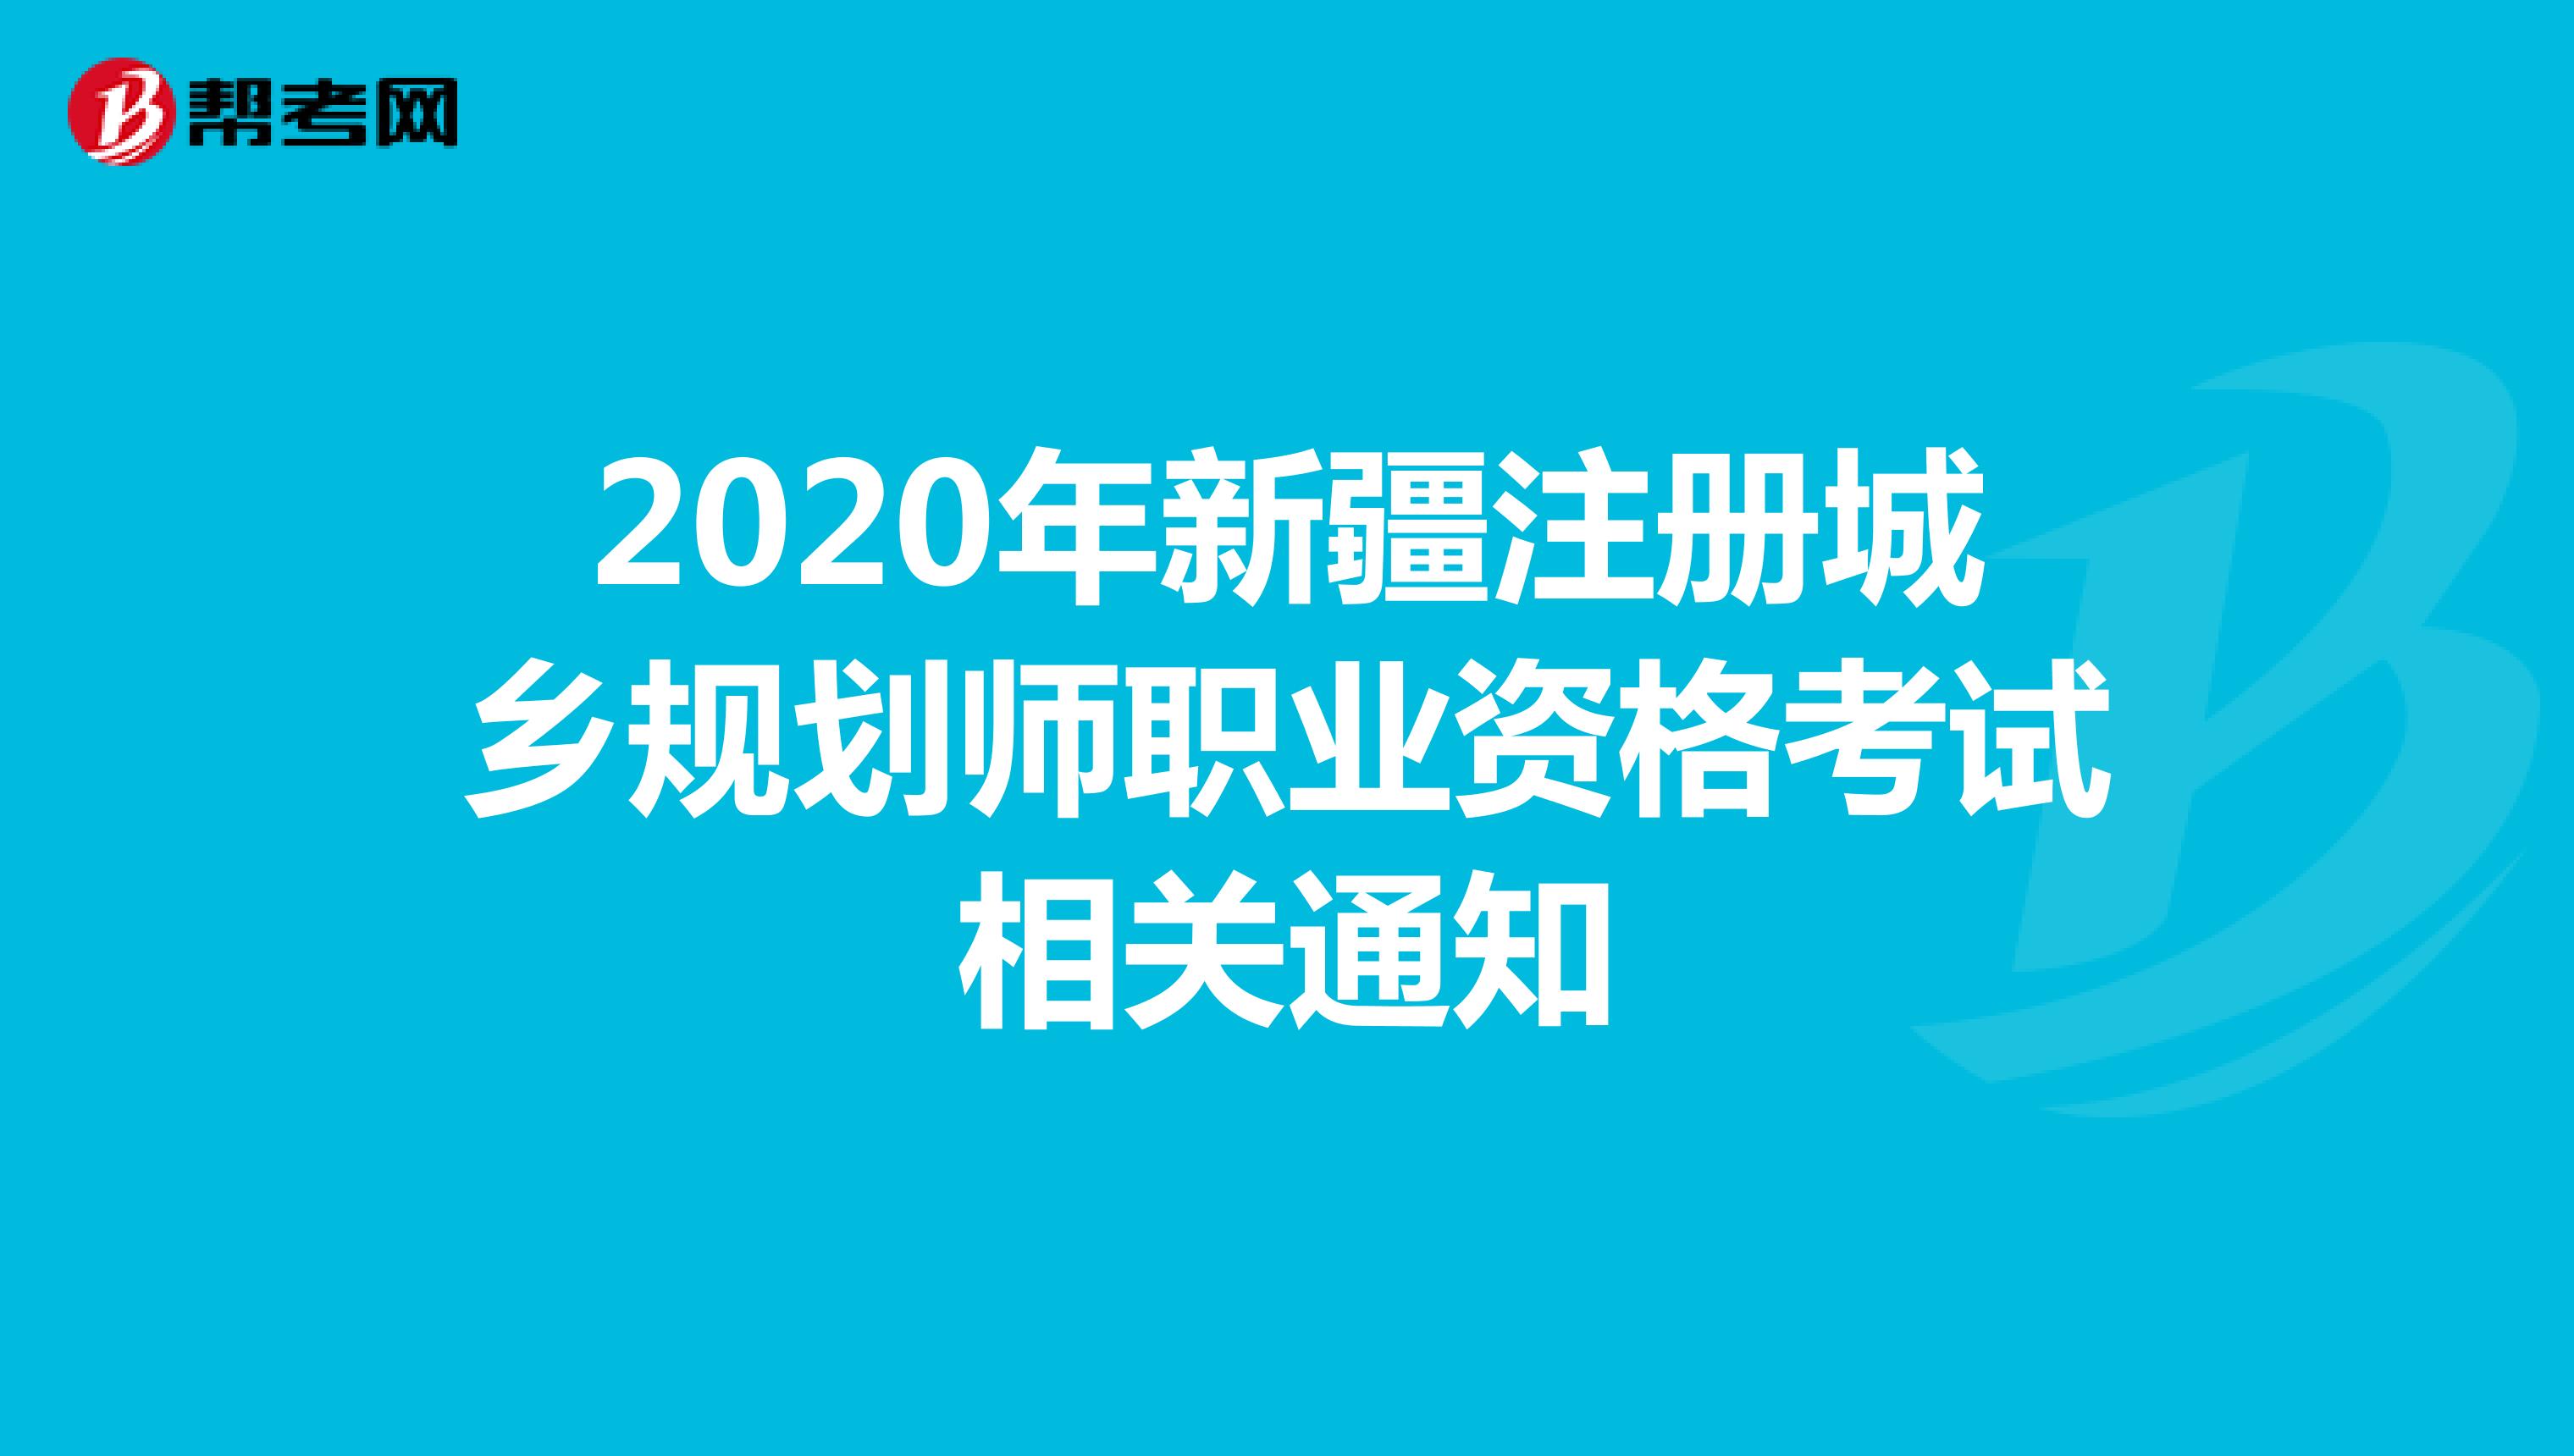 2020年新疆注册城乡规划师职业资格考试相关通知